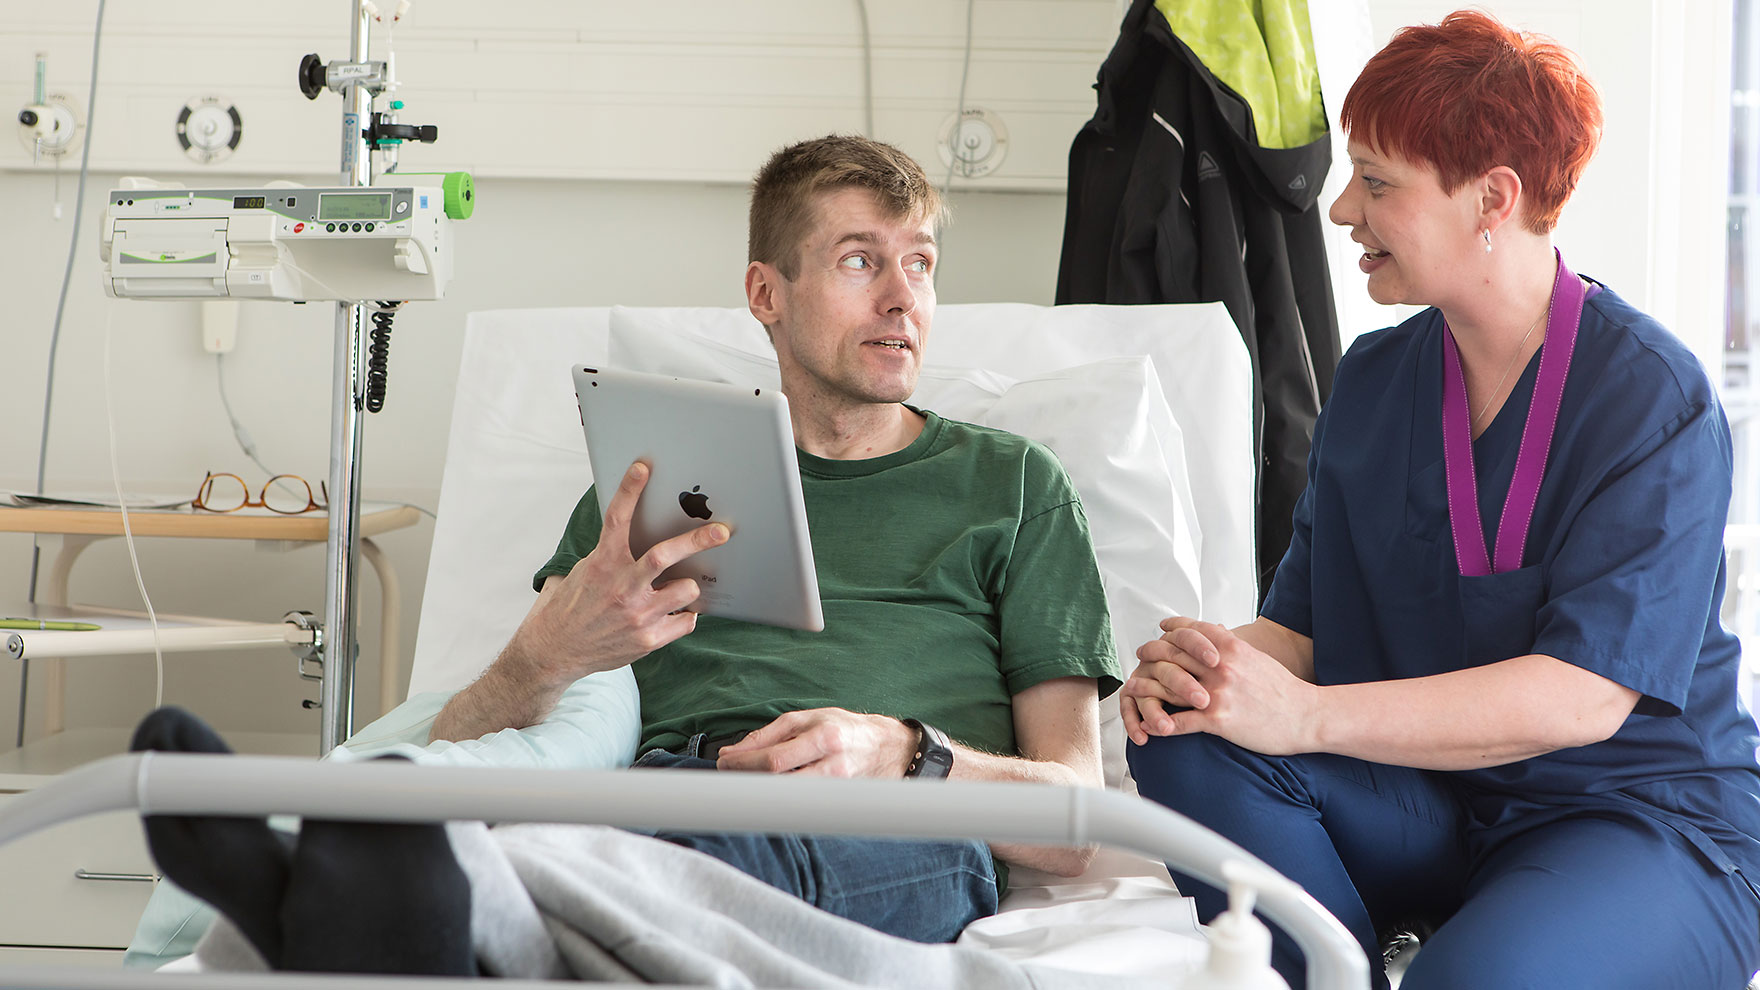 Miespotilas juttelee sairaalasängyllä vieressään istuvan hoitajan kanssa.